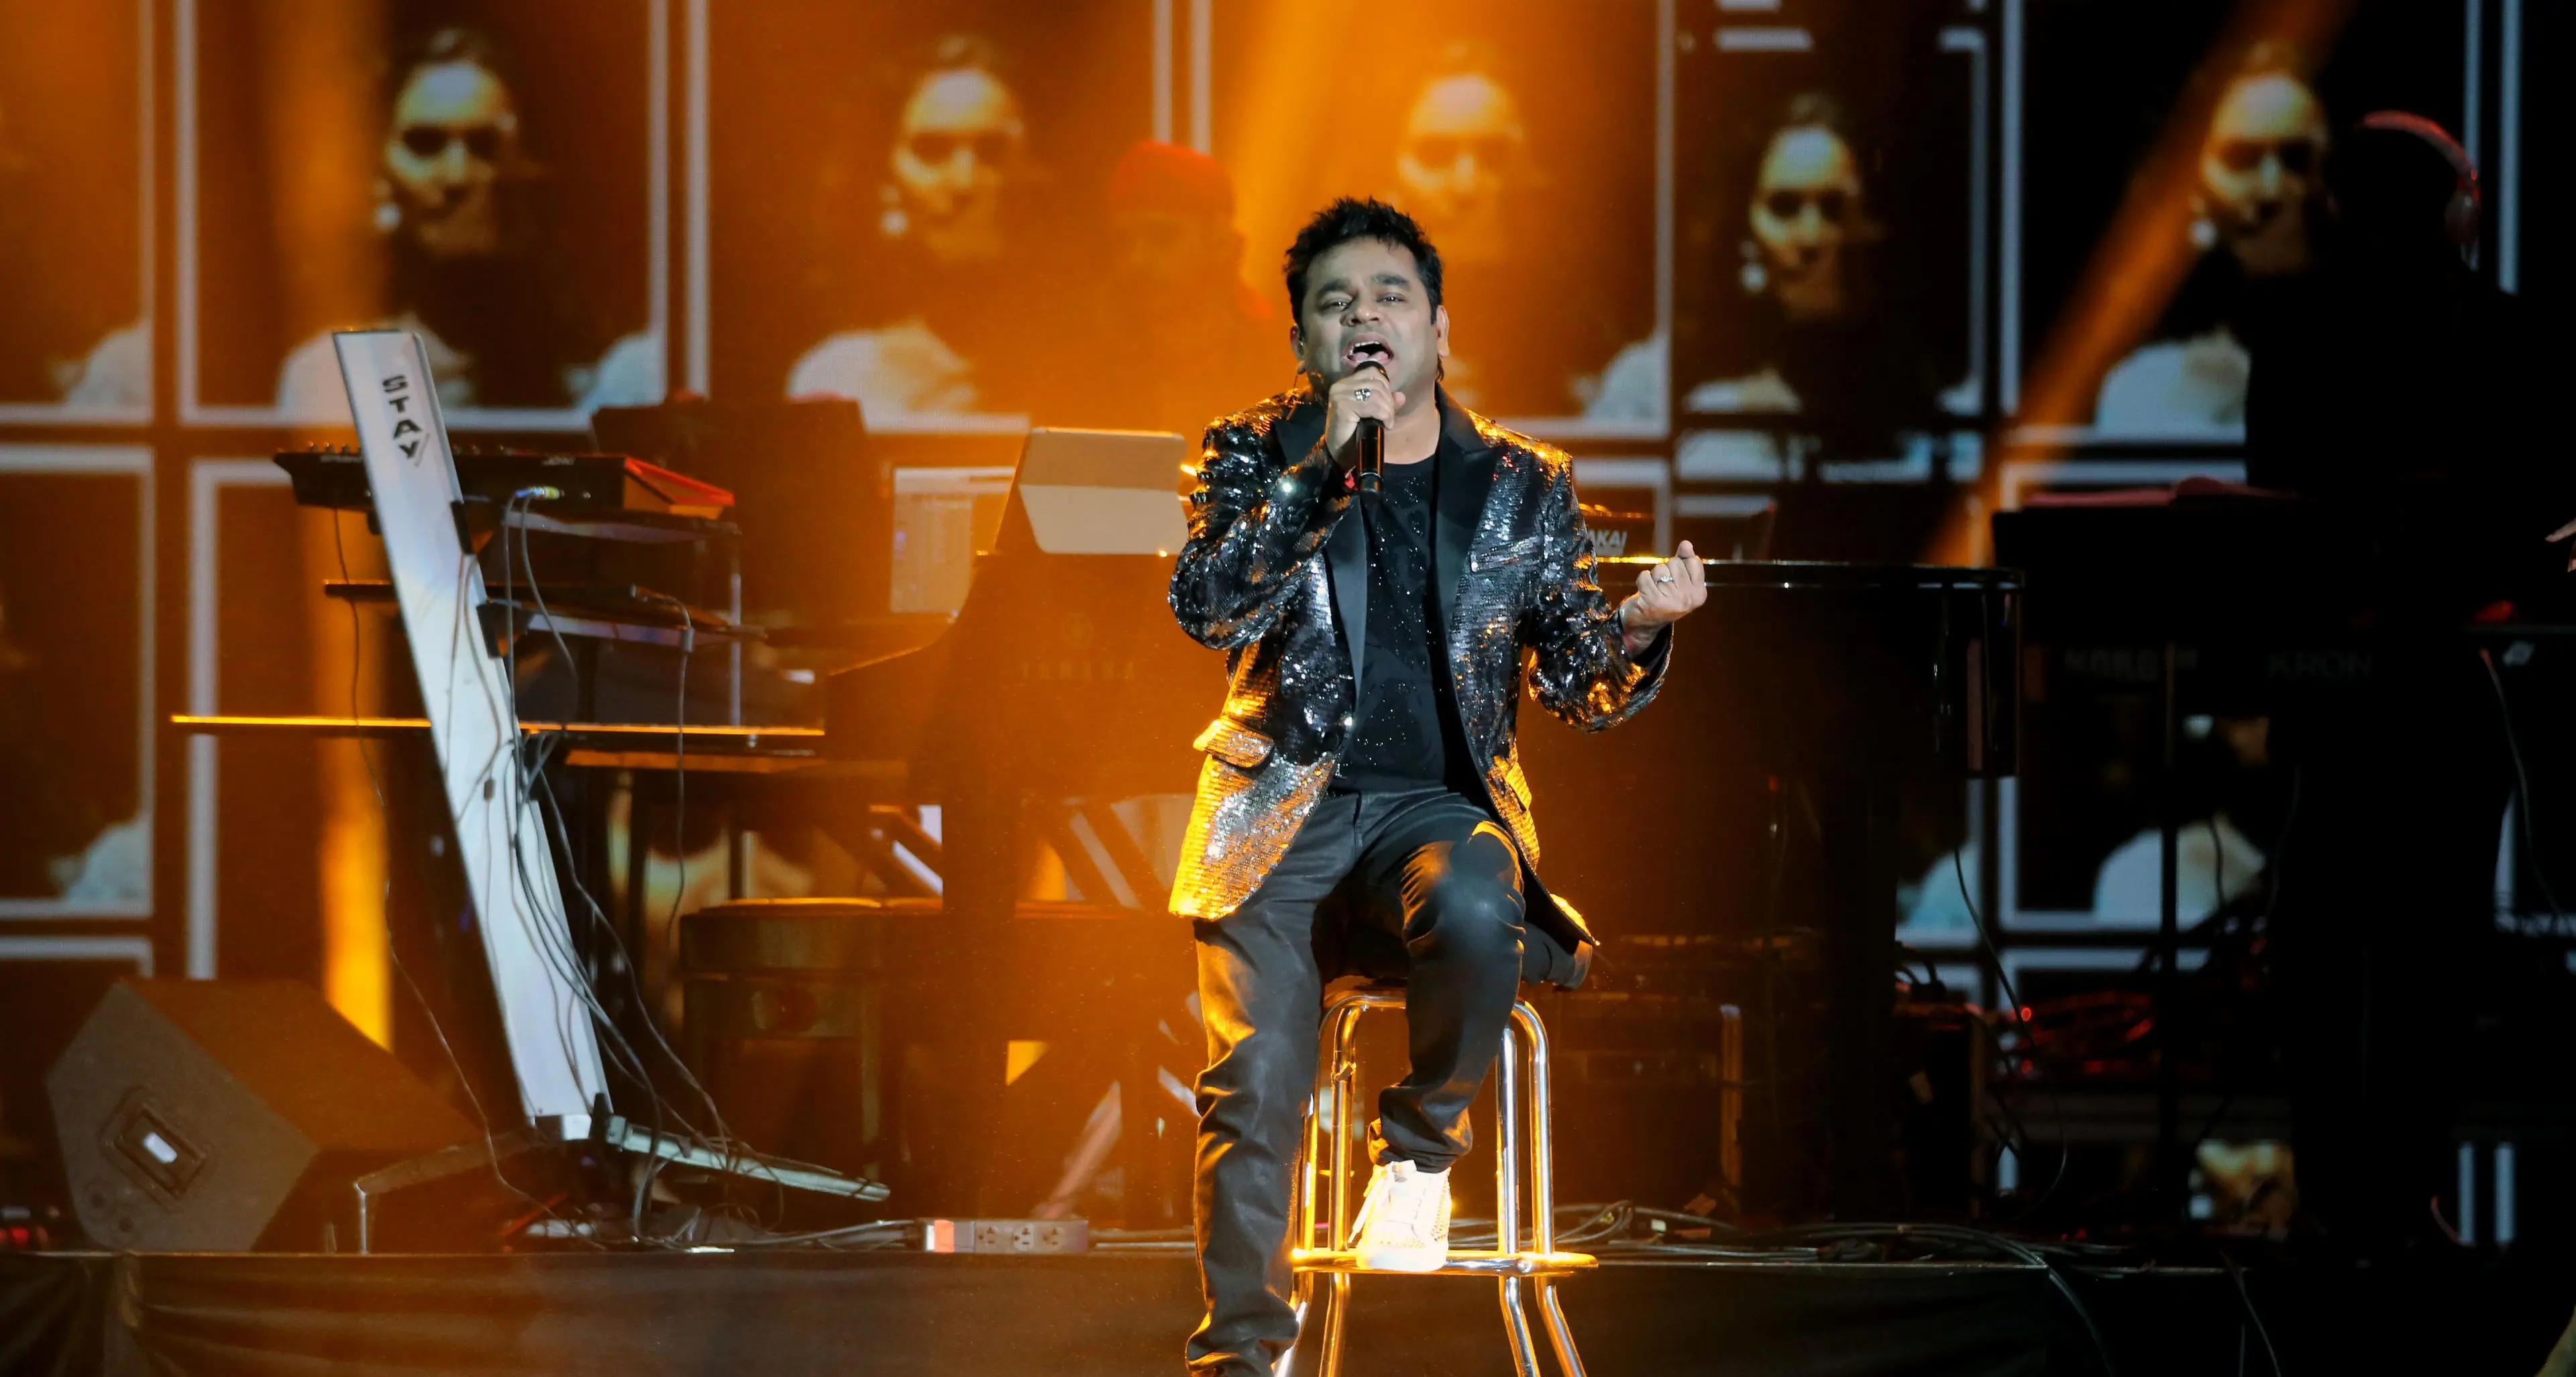 Expo 2020 Dubai: AR Rahman hopes to inspire the world through his music